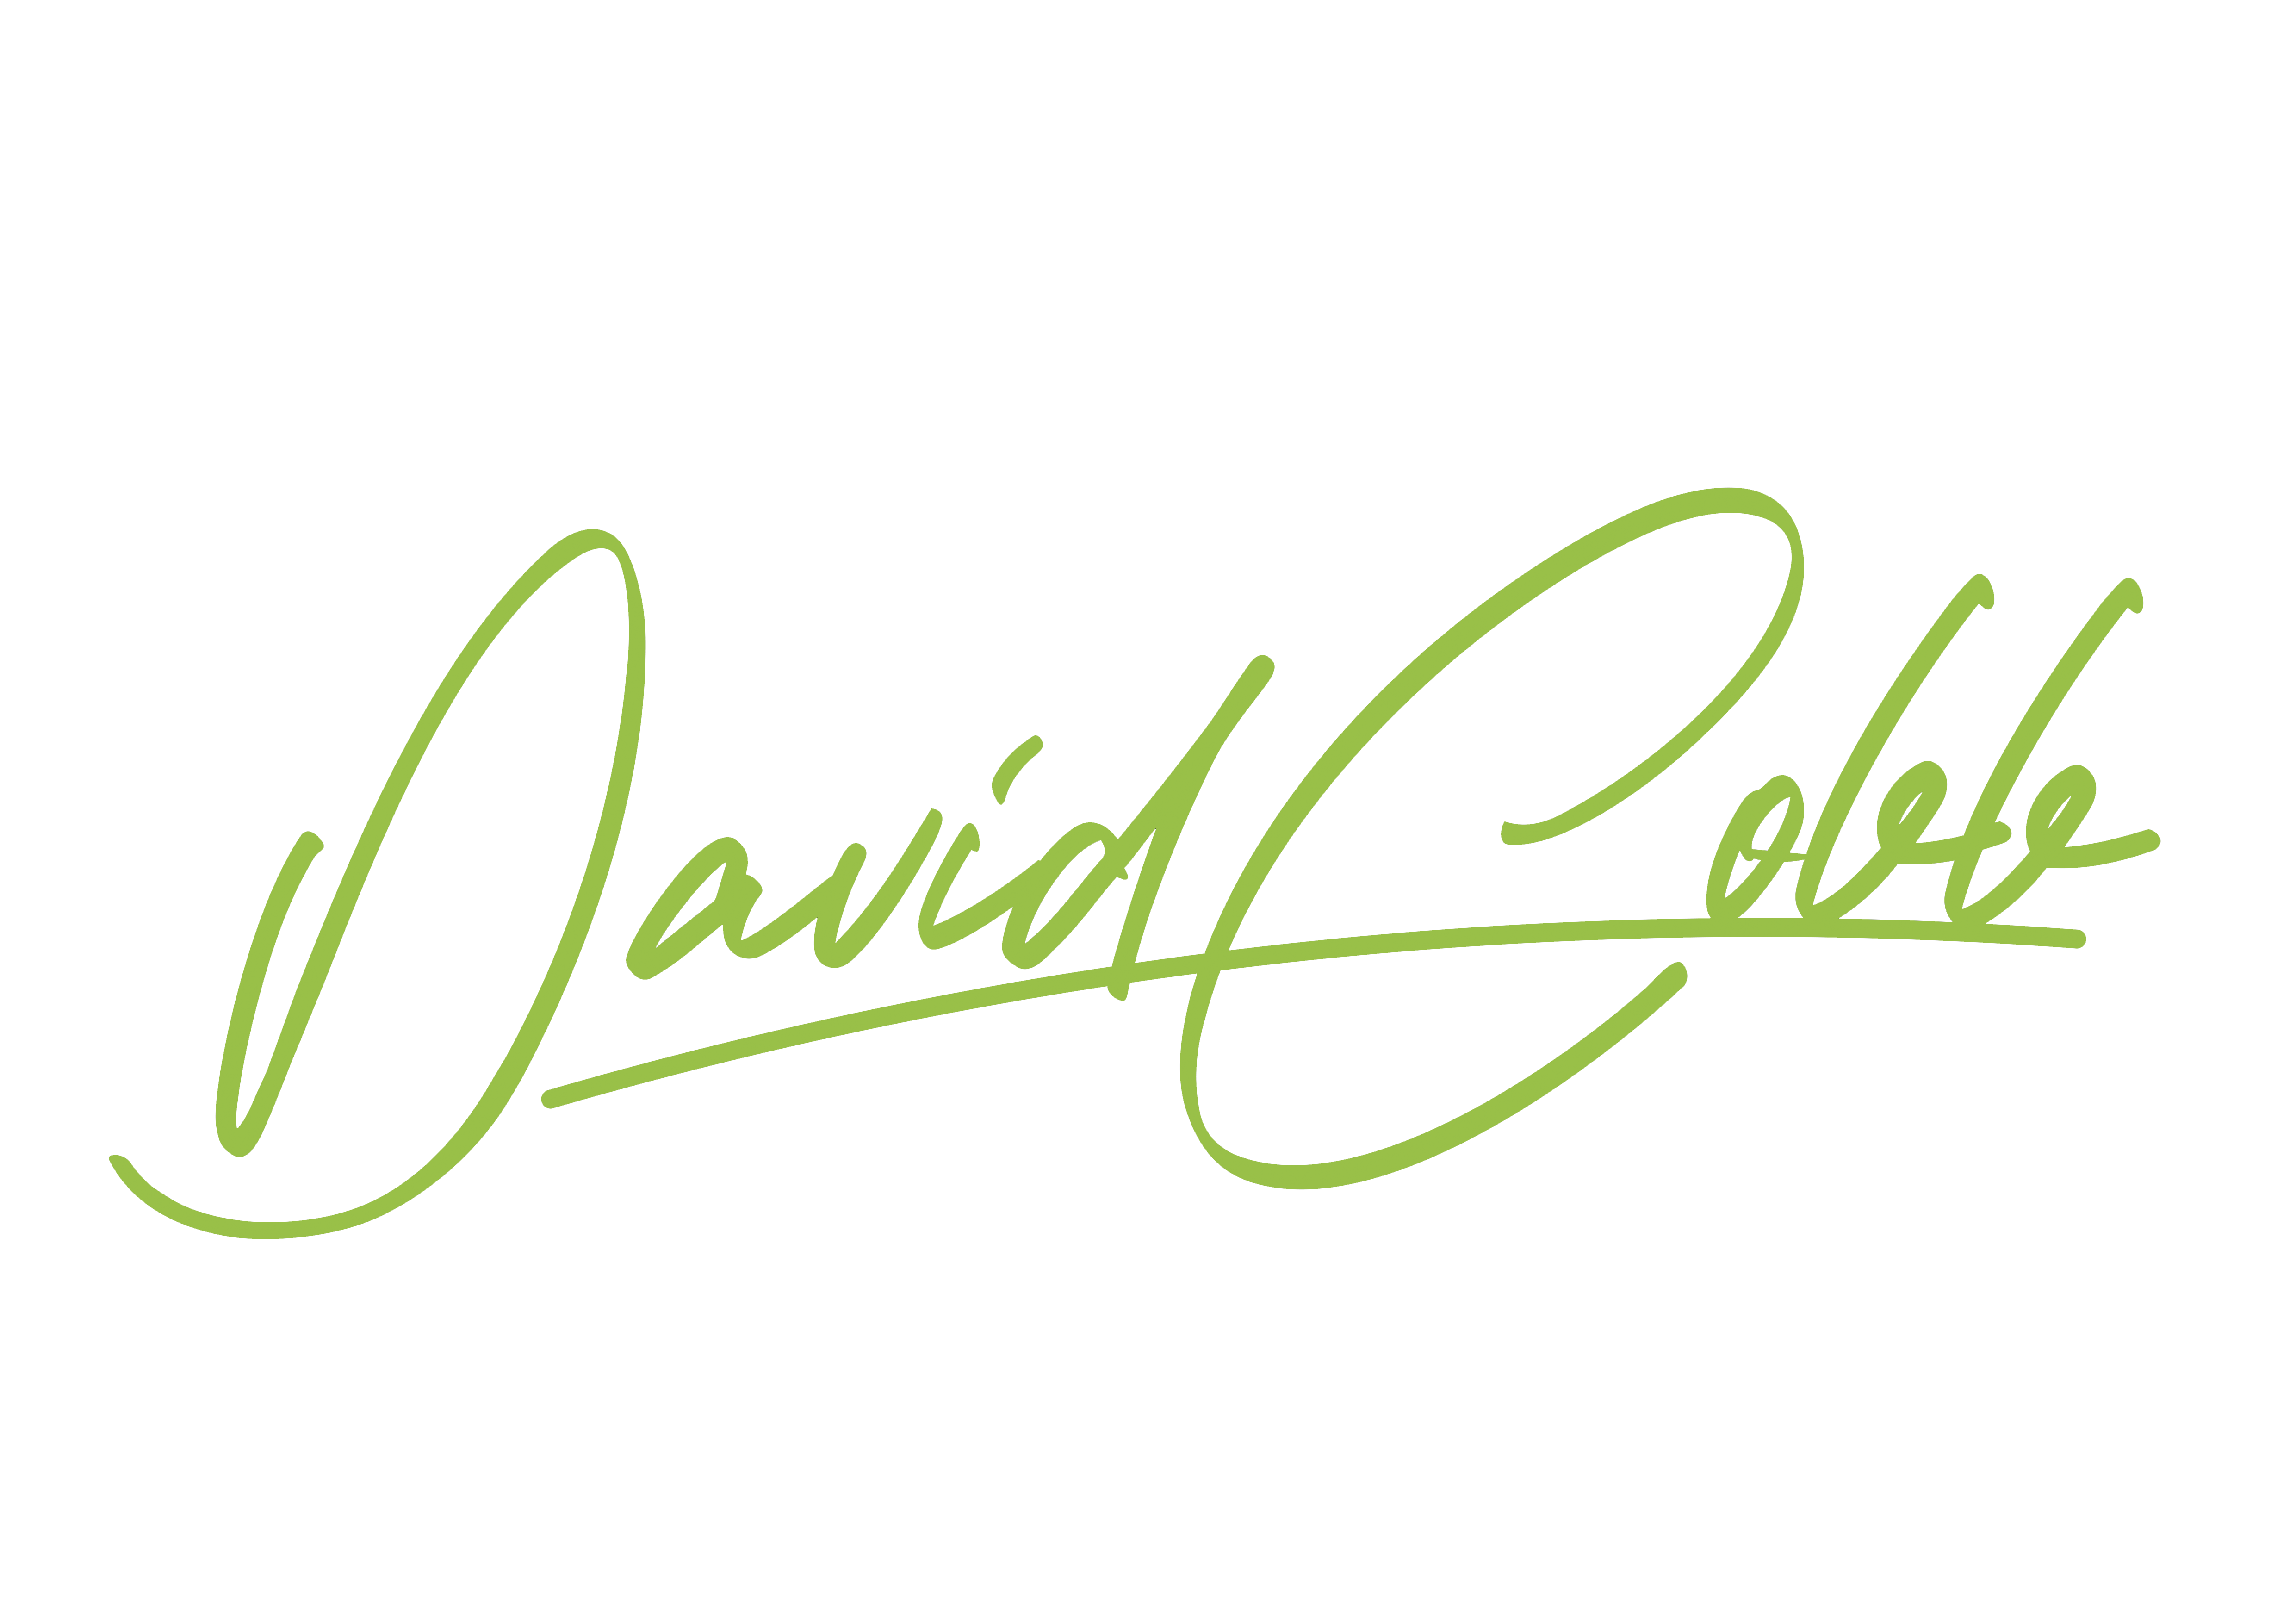 DaveCobb33.com | Official Website of David Cobb